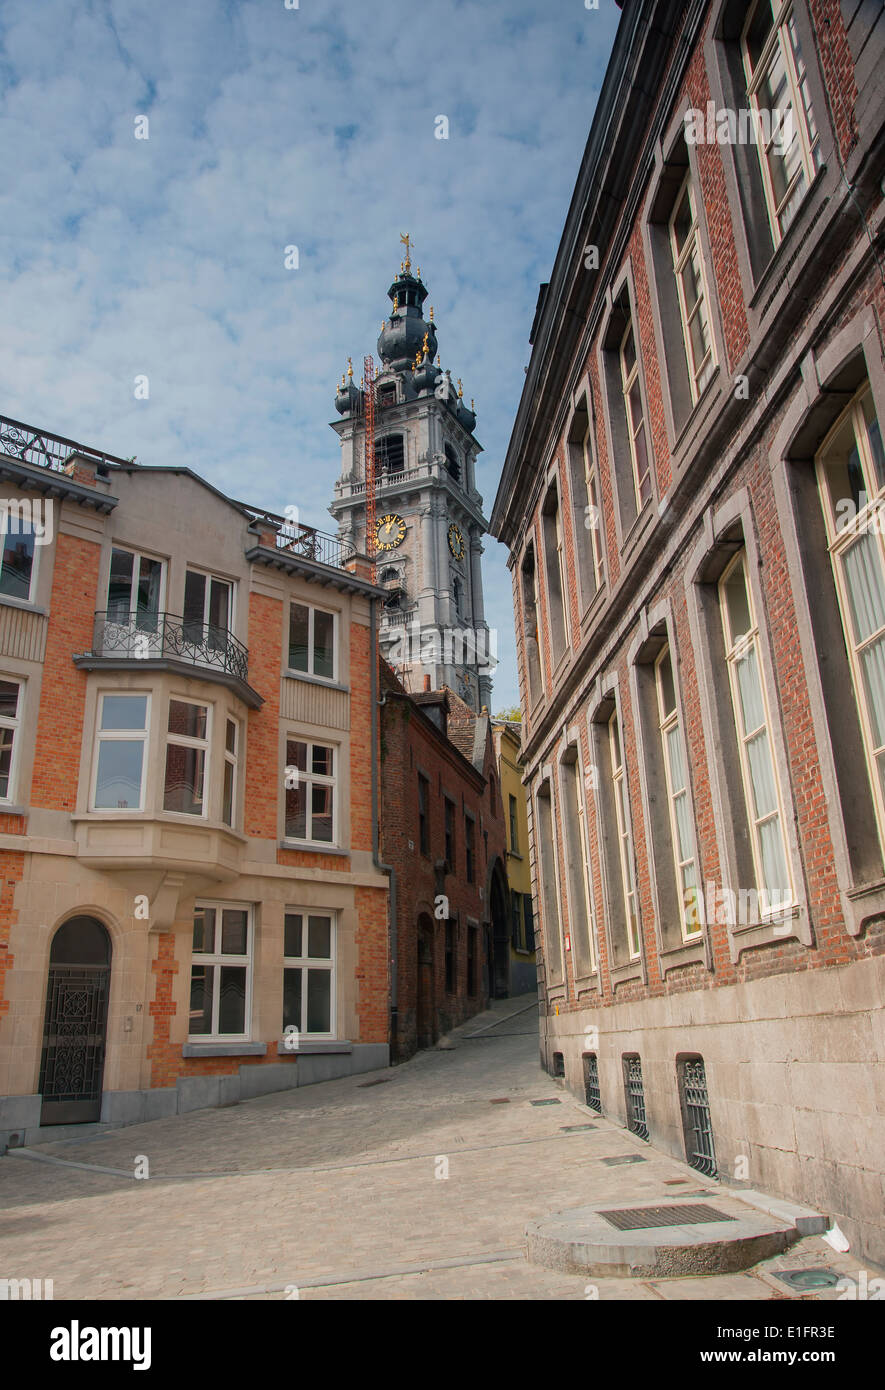 Street in Mons, Belgium looking towards the Baroque Belfry Stock Photo